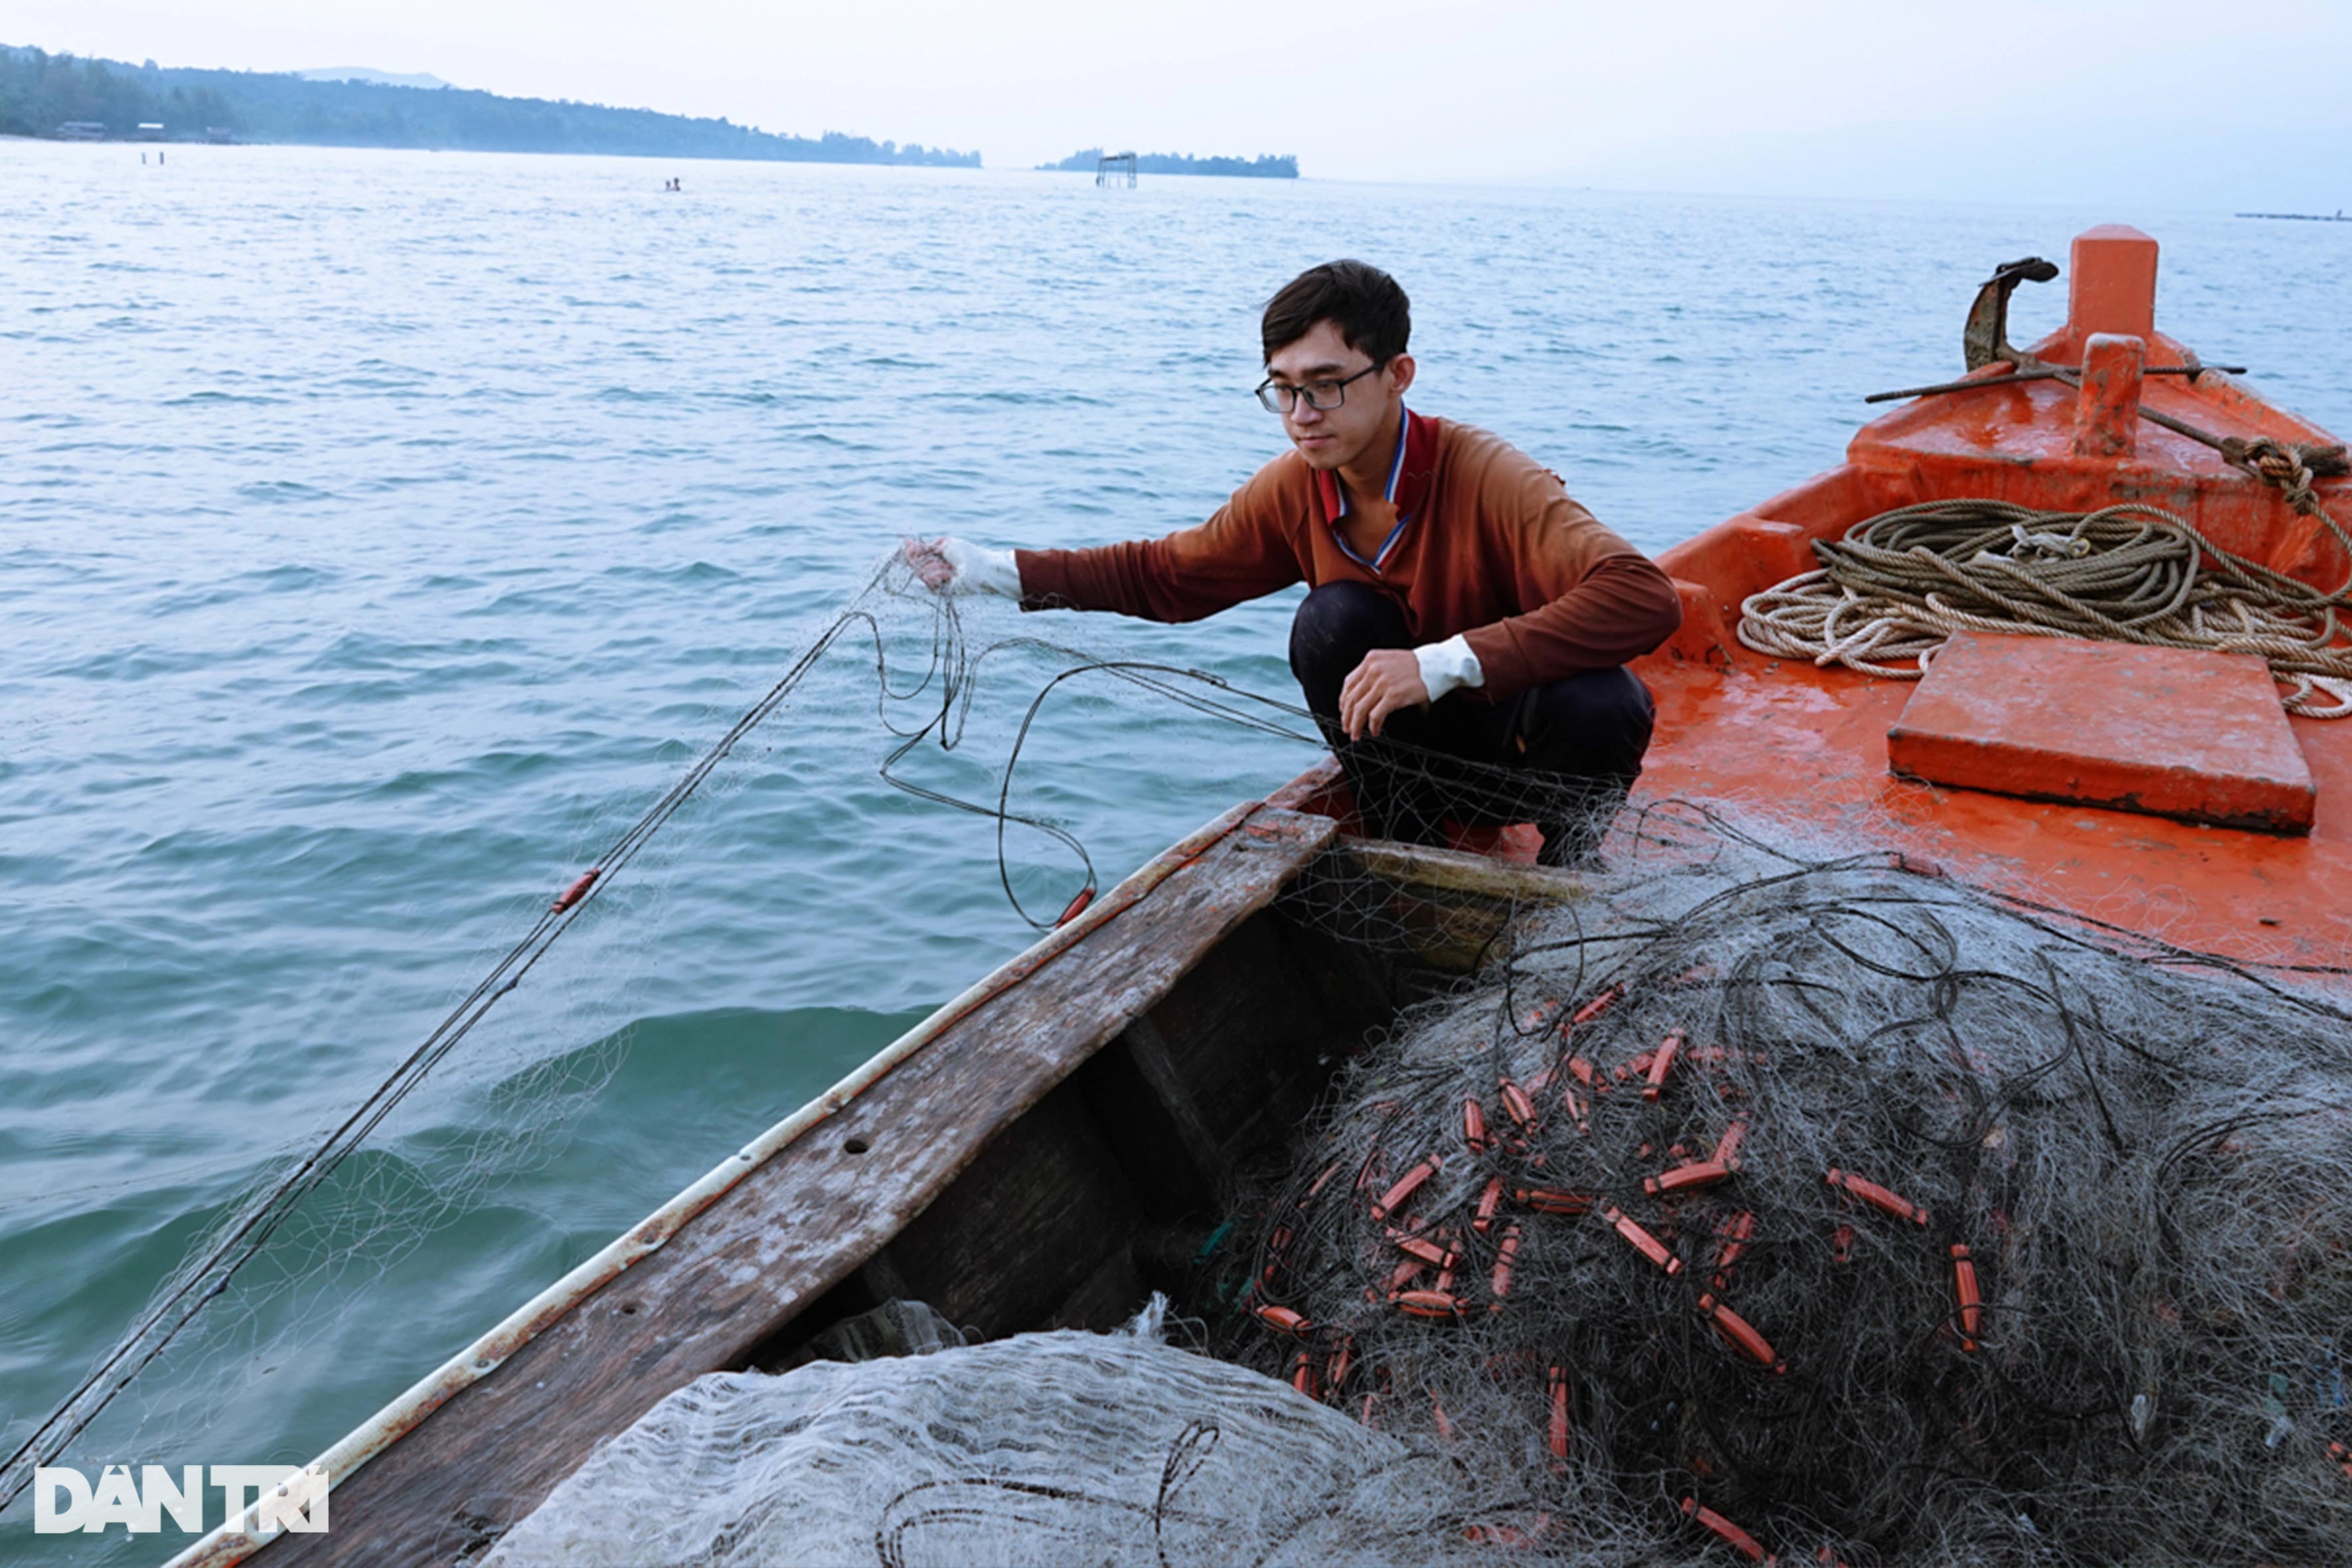 Săn ghẹ nghịch mùa, ngư dân Phú Quốc vẫn kiếm tiền triệu mỗi ngày - Ảnh 1.